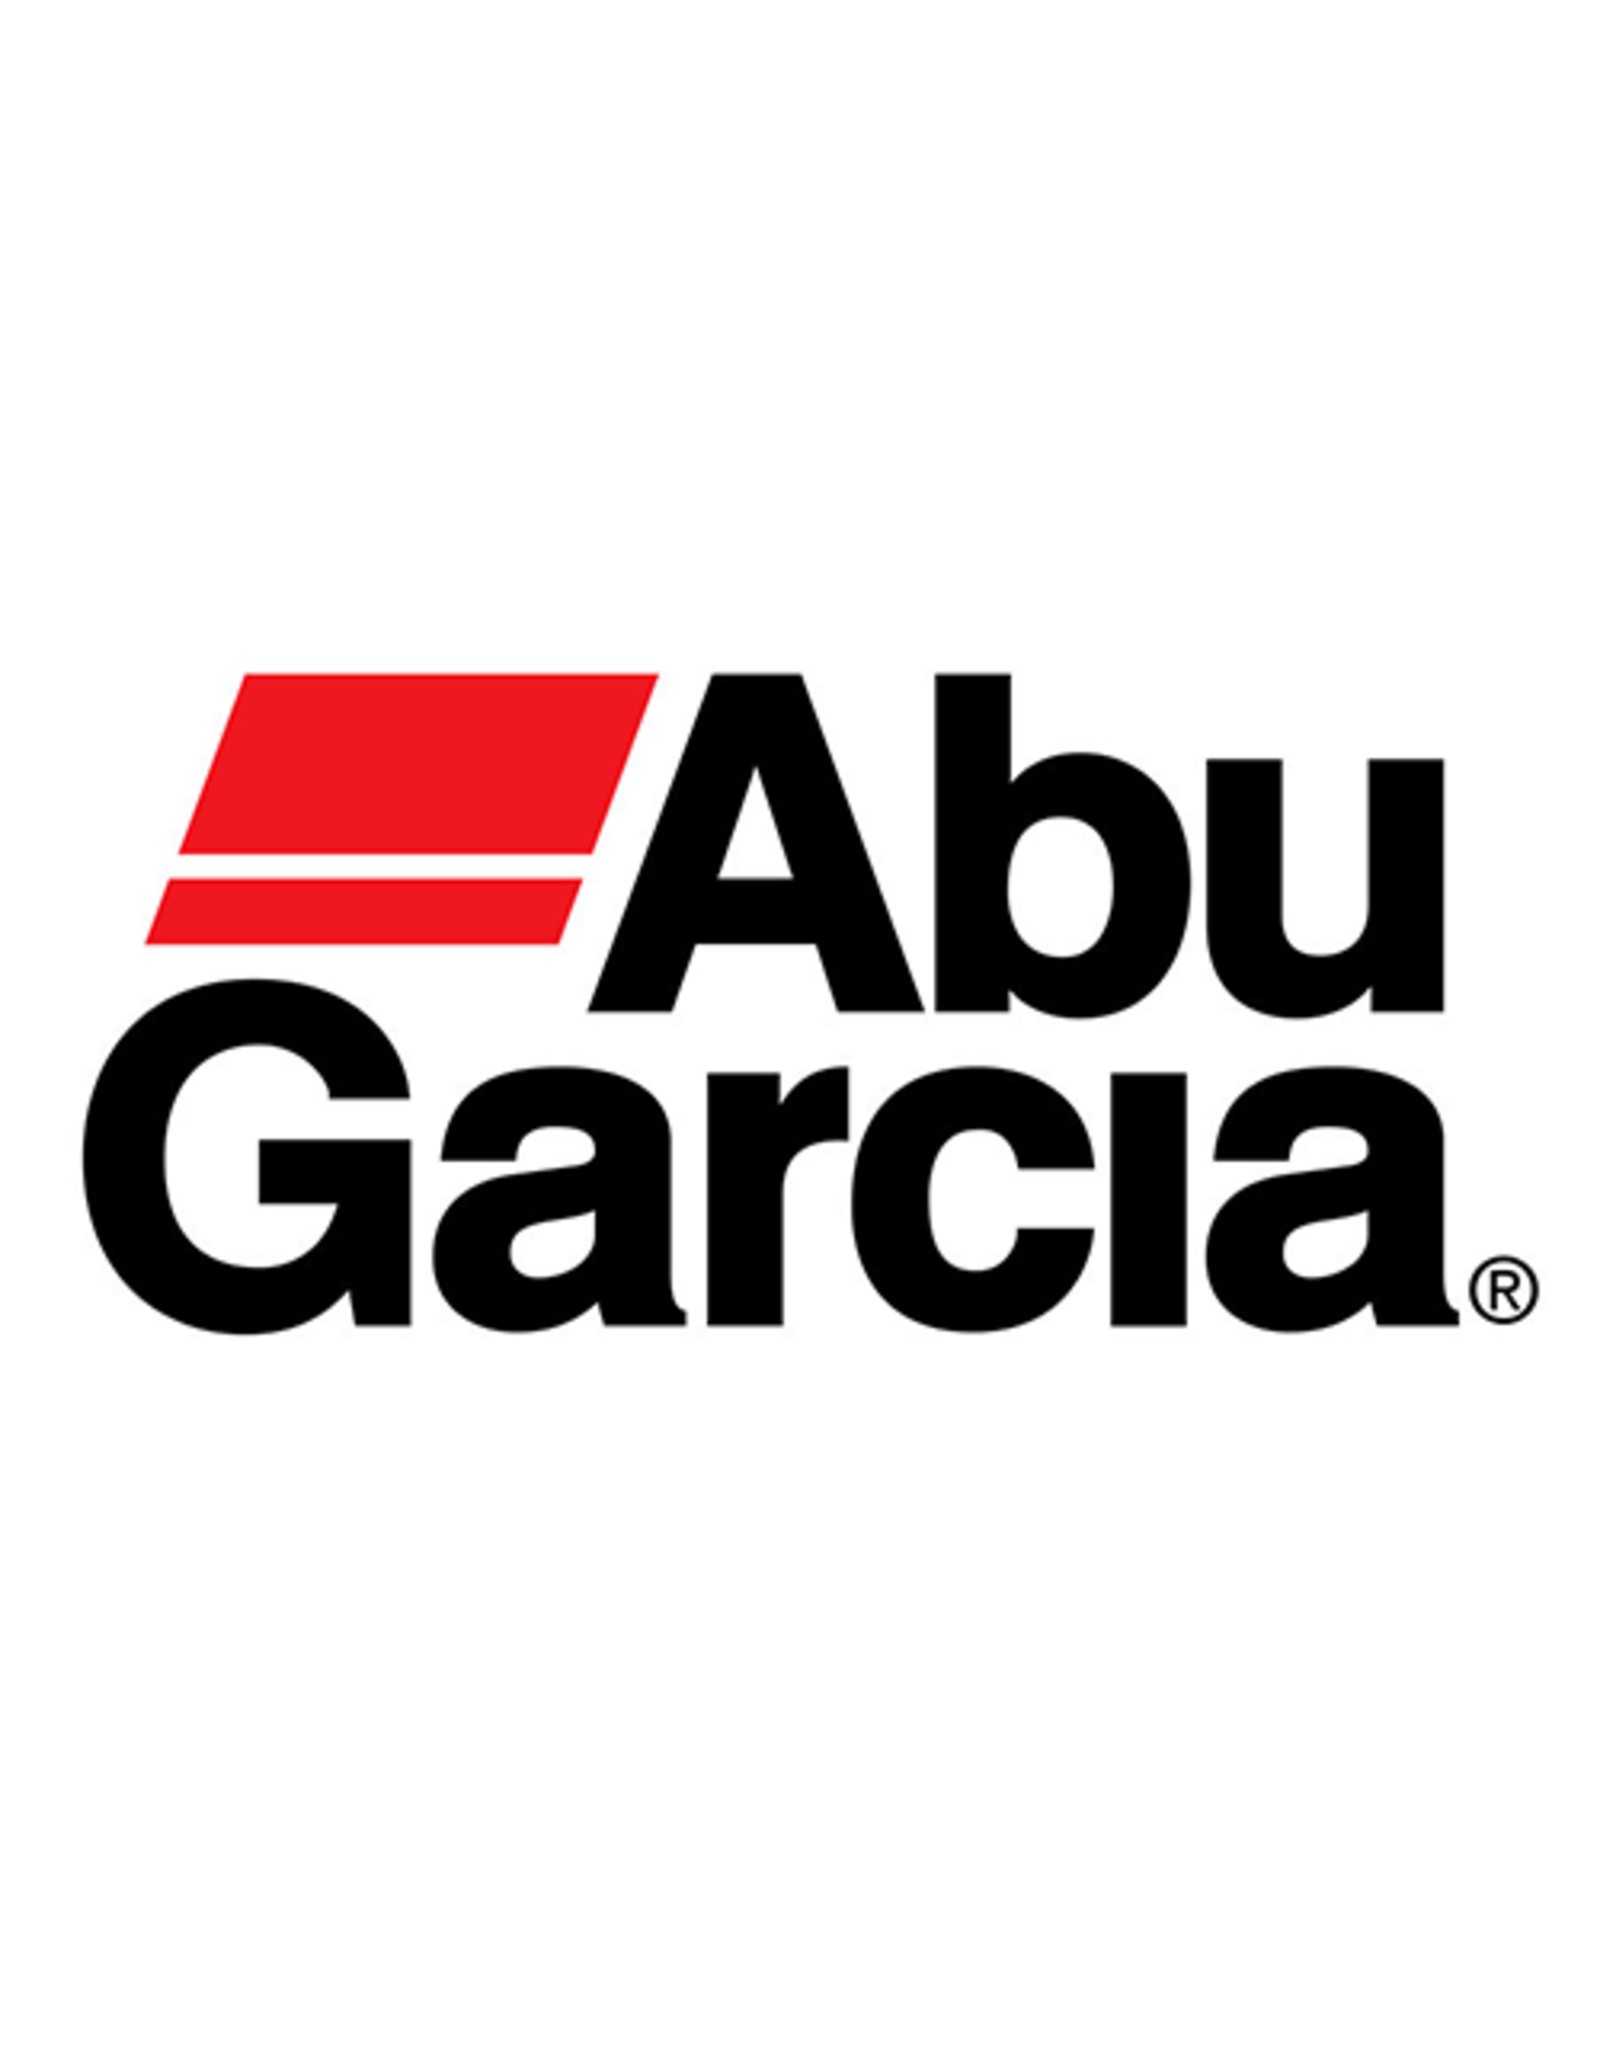 Abu Garcia 1279320  BAIL ARM